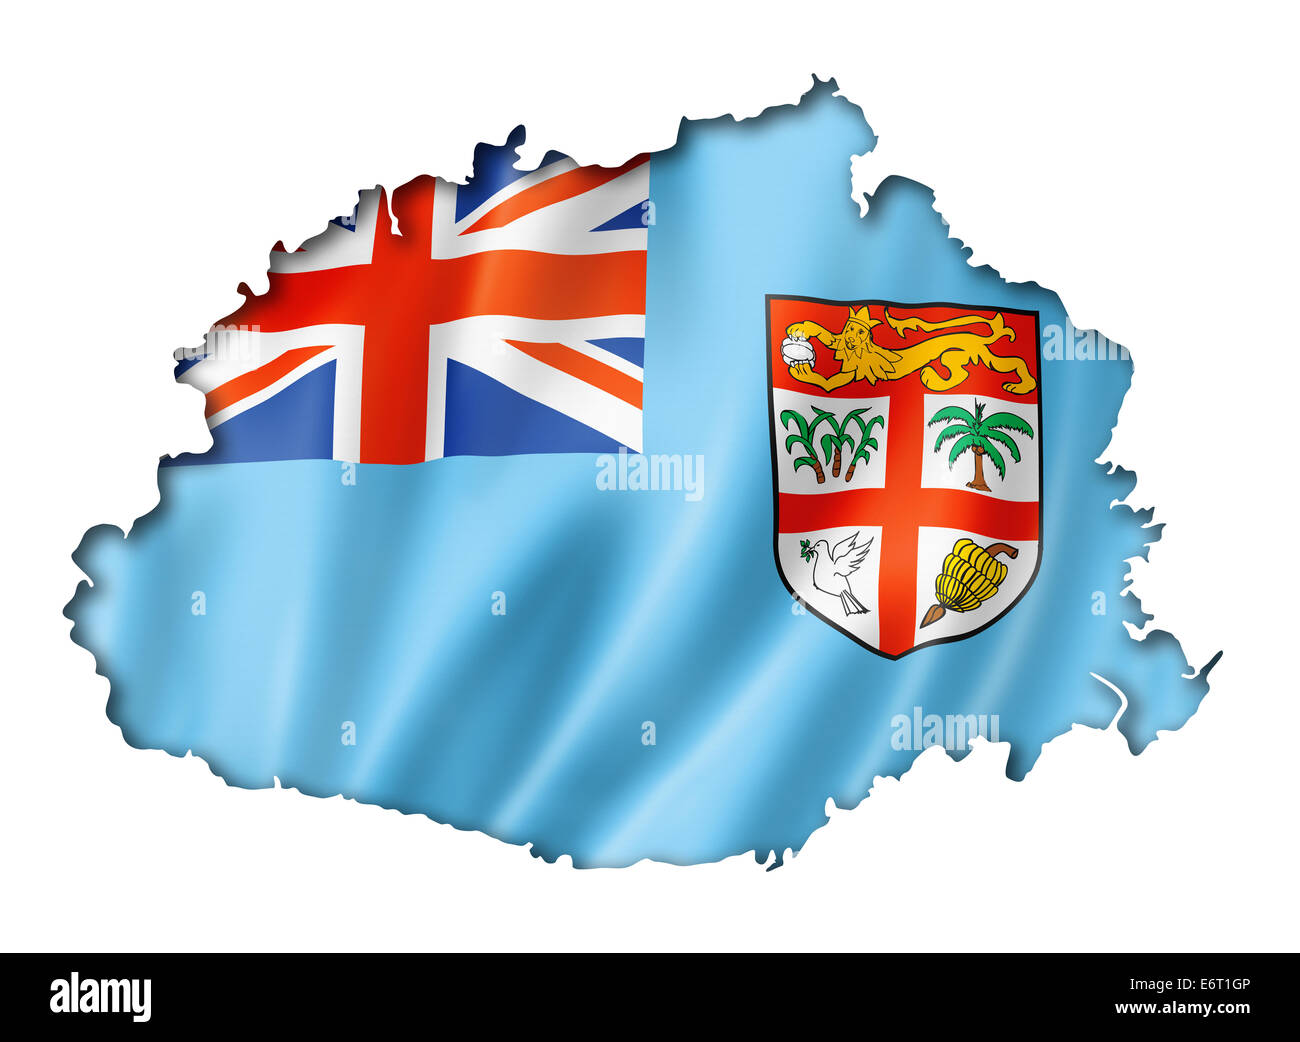 Fidschi Flagge Abzubilden Drei Dimensionalen Render Isoliert Auf Weiss E6t1gp 